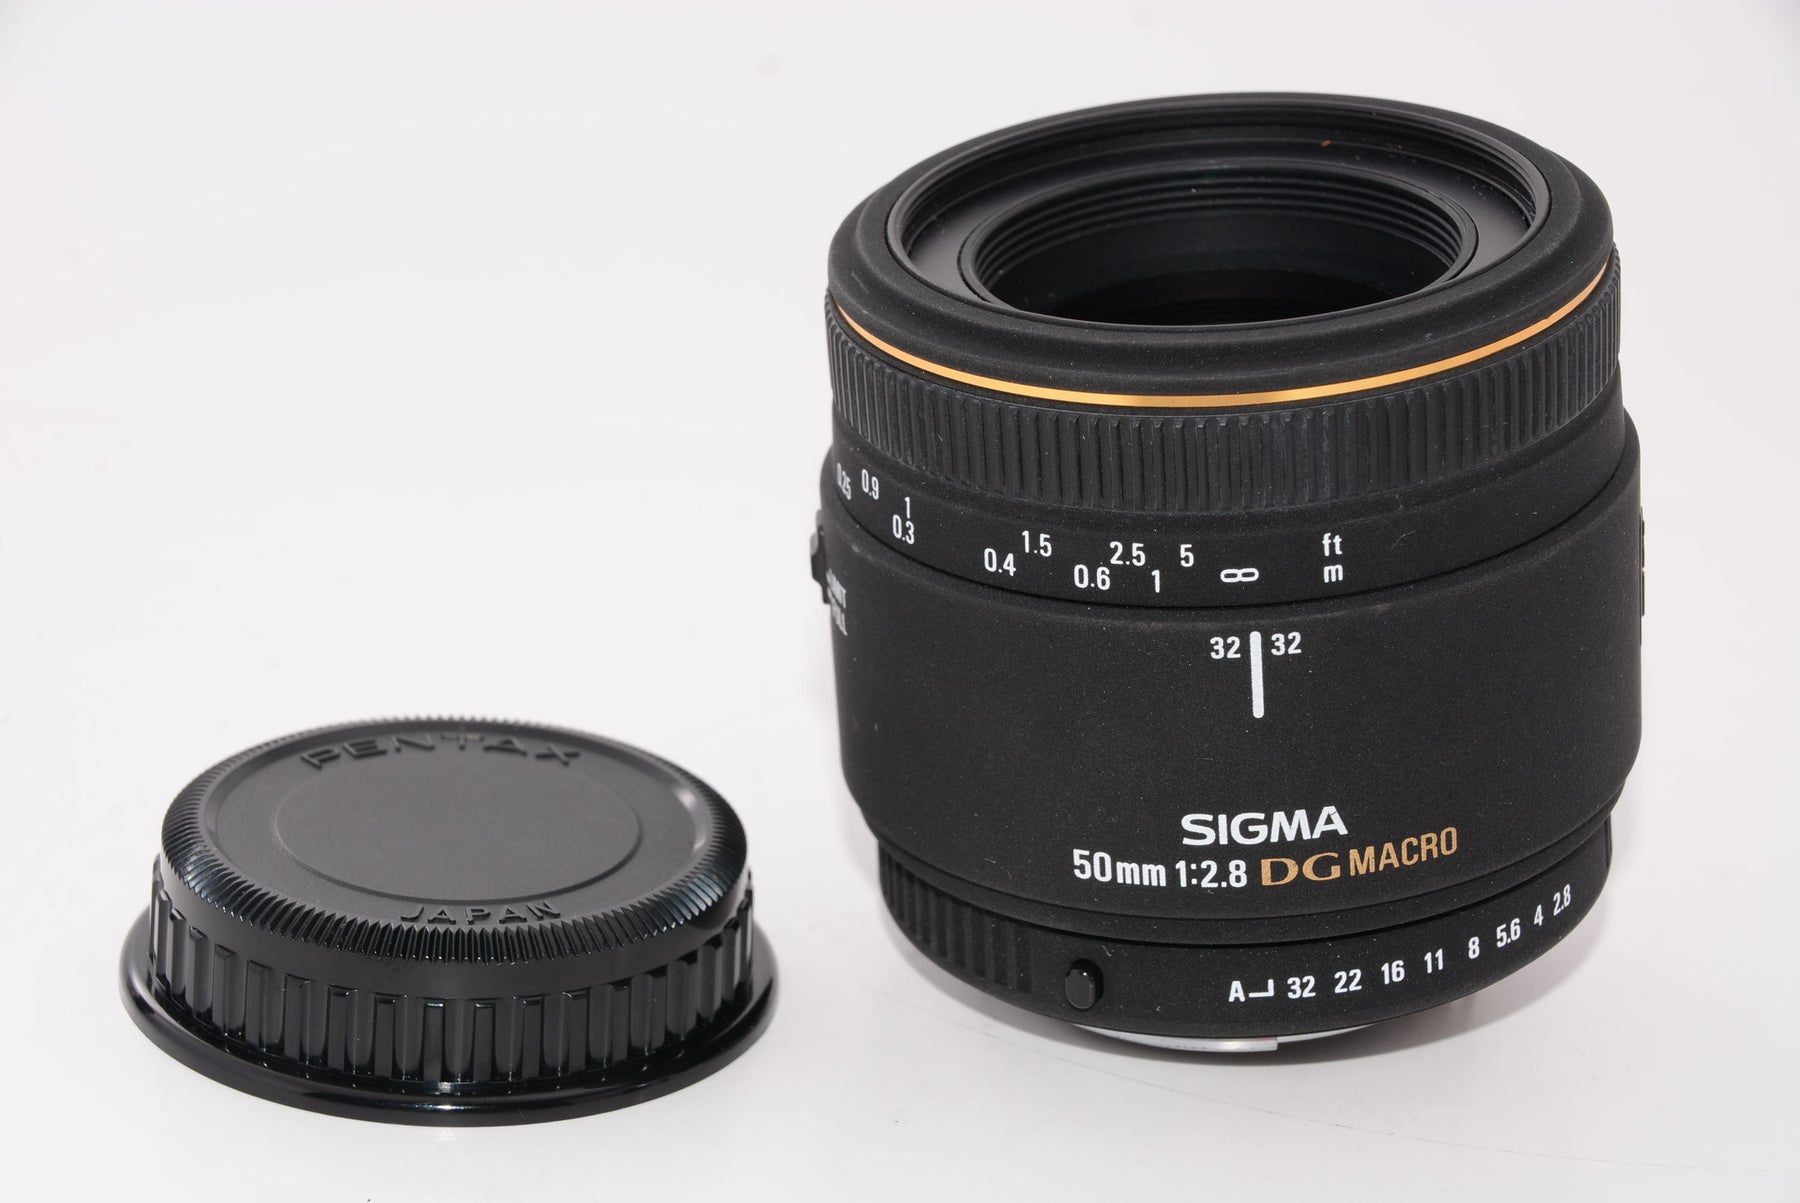 SIGMA EX 50mm 1:2.8 F2.8 DG MACRO PENTAX